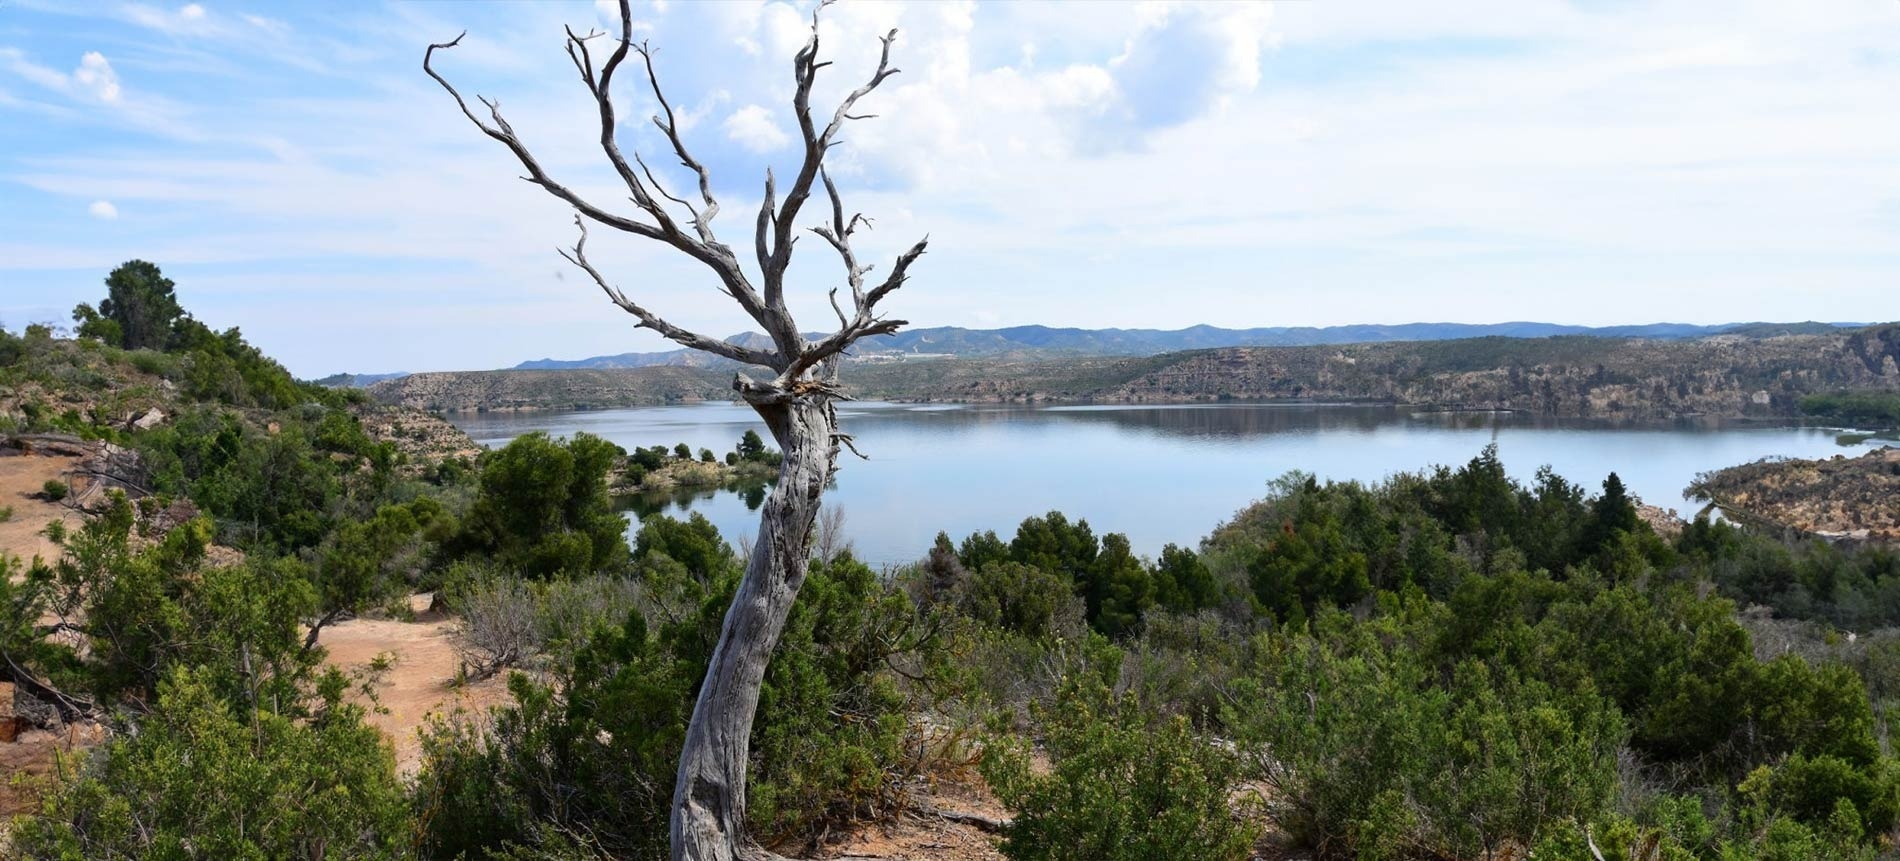 un árbol muerto se encuentra en la orilla de un lago